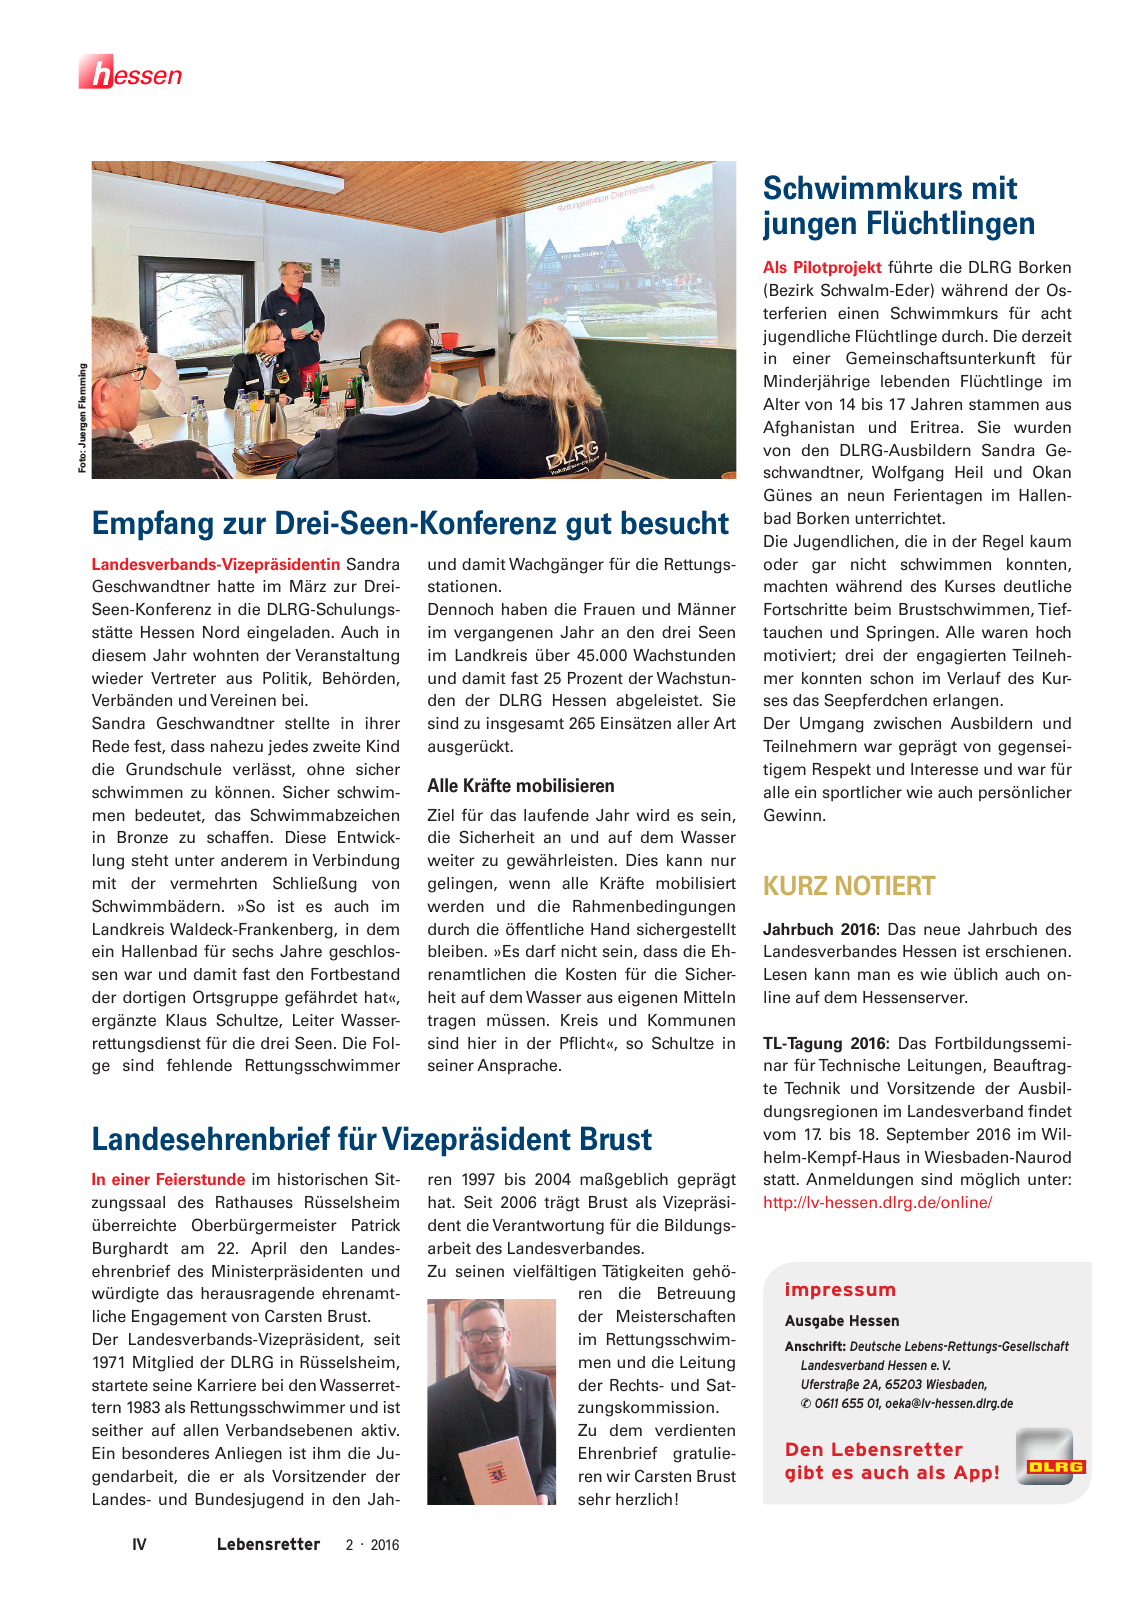 Vorschau Lebensretter 2/2016 - Regionalausgabe Hessen Seite 6